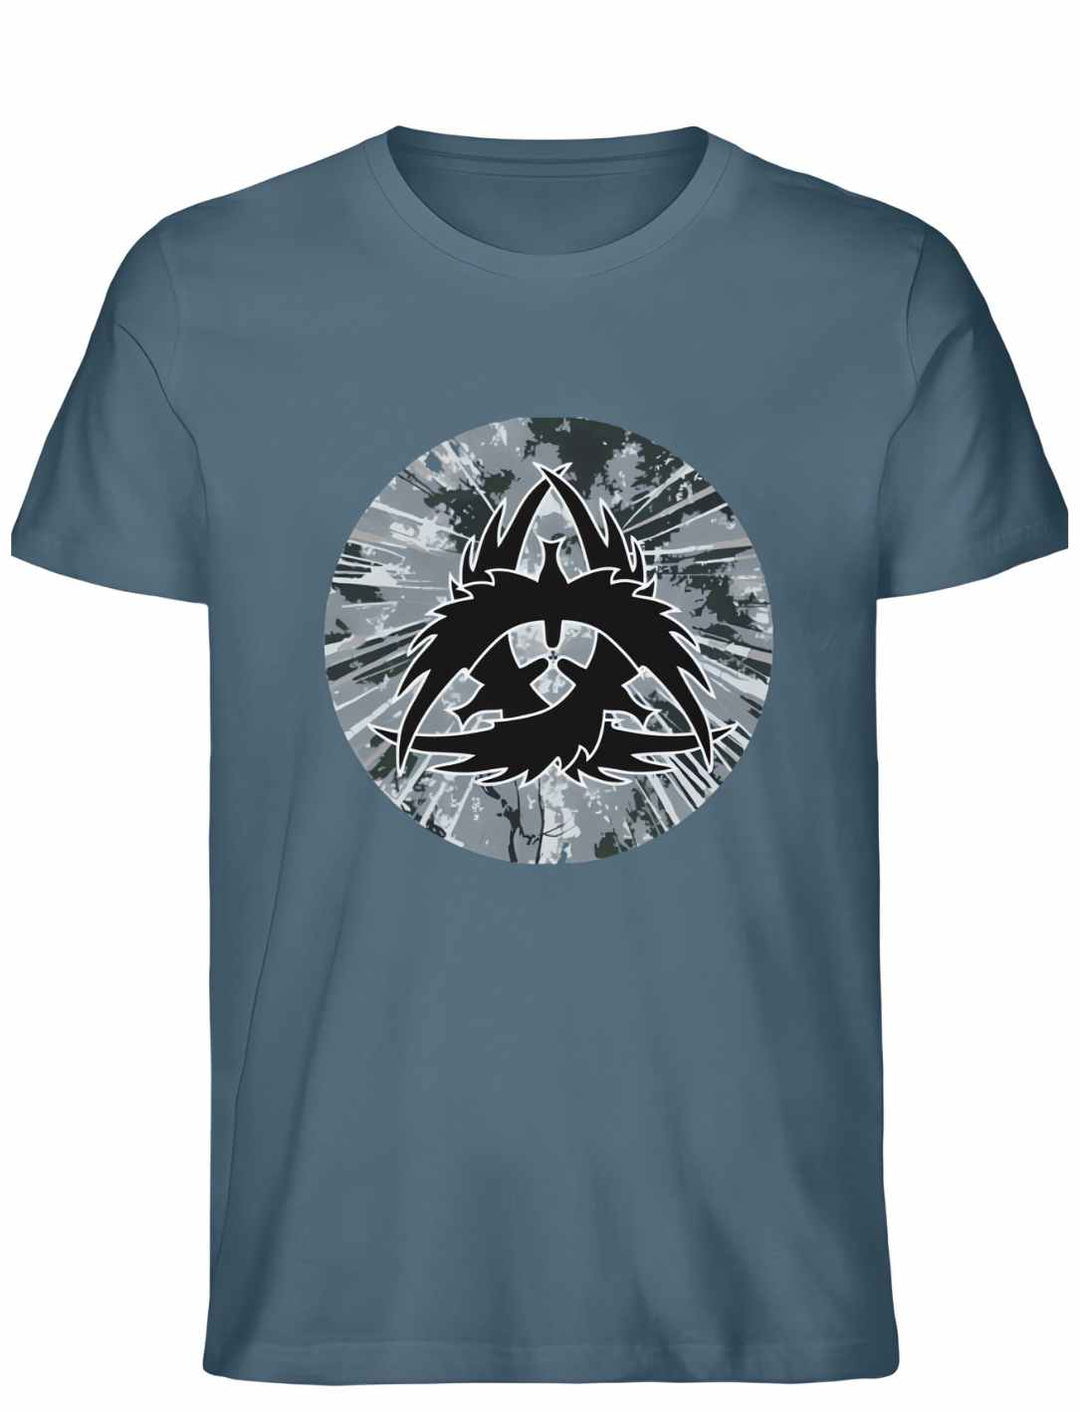 Unisex Organic Stargazer "The Raven Clan" T-Shirt - Einzigartiges Design in Premium Qualität